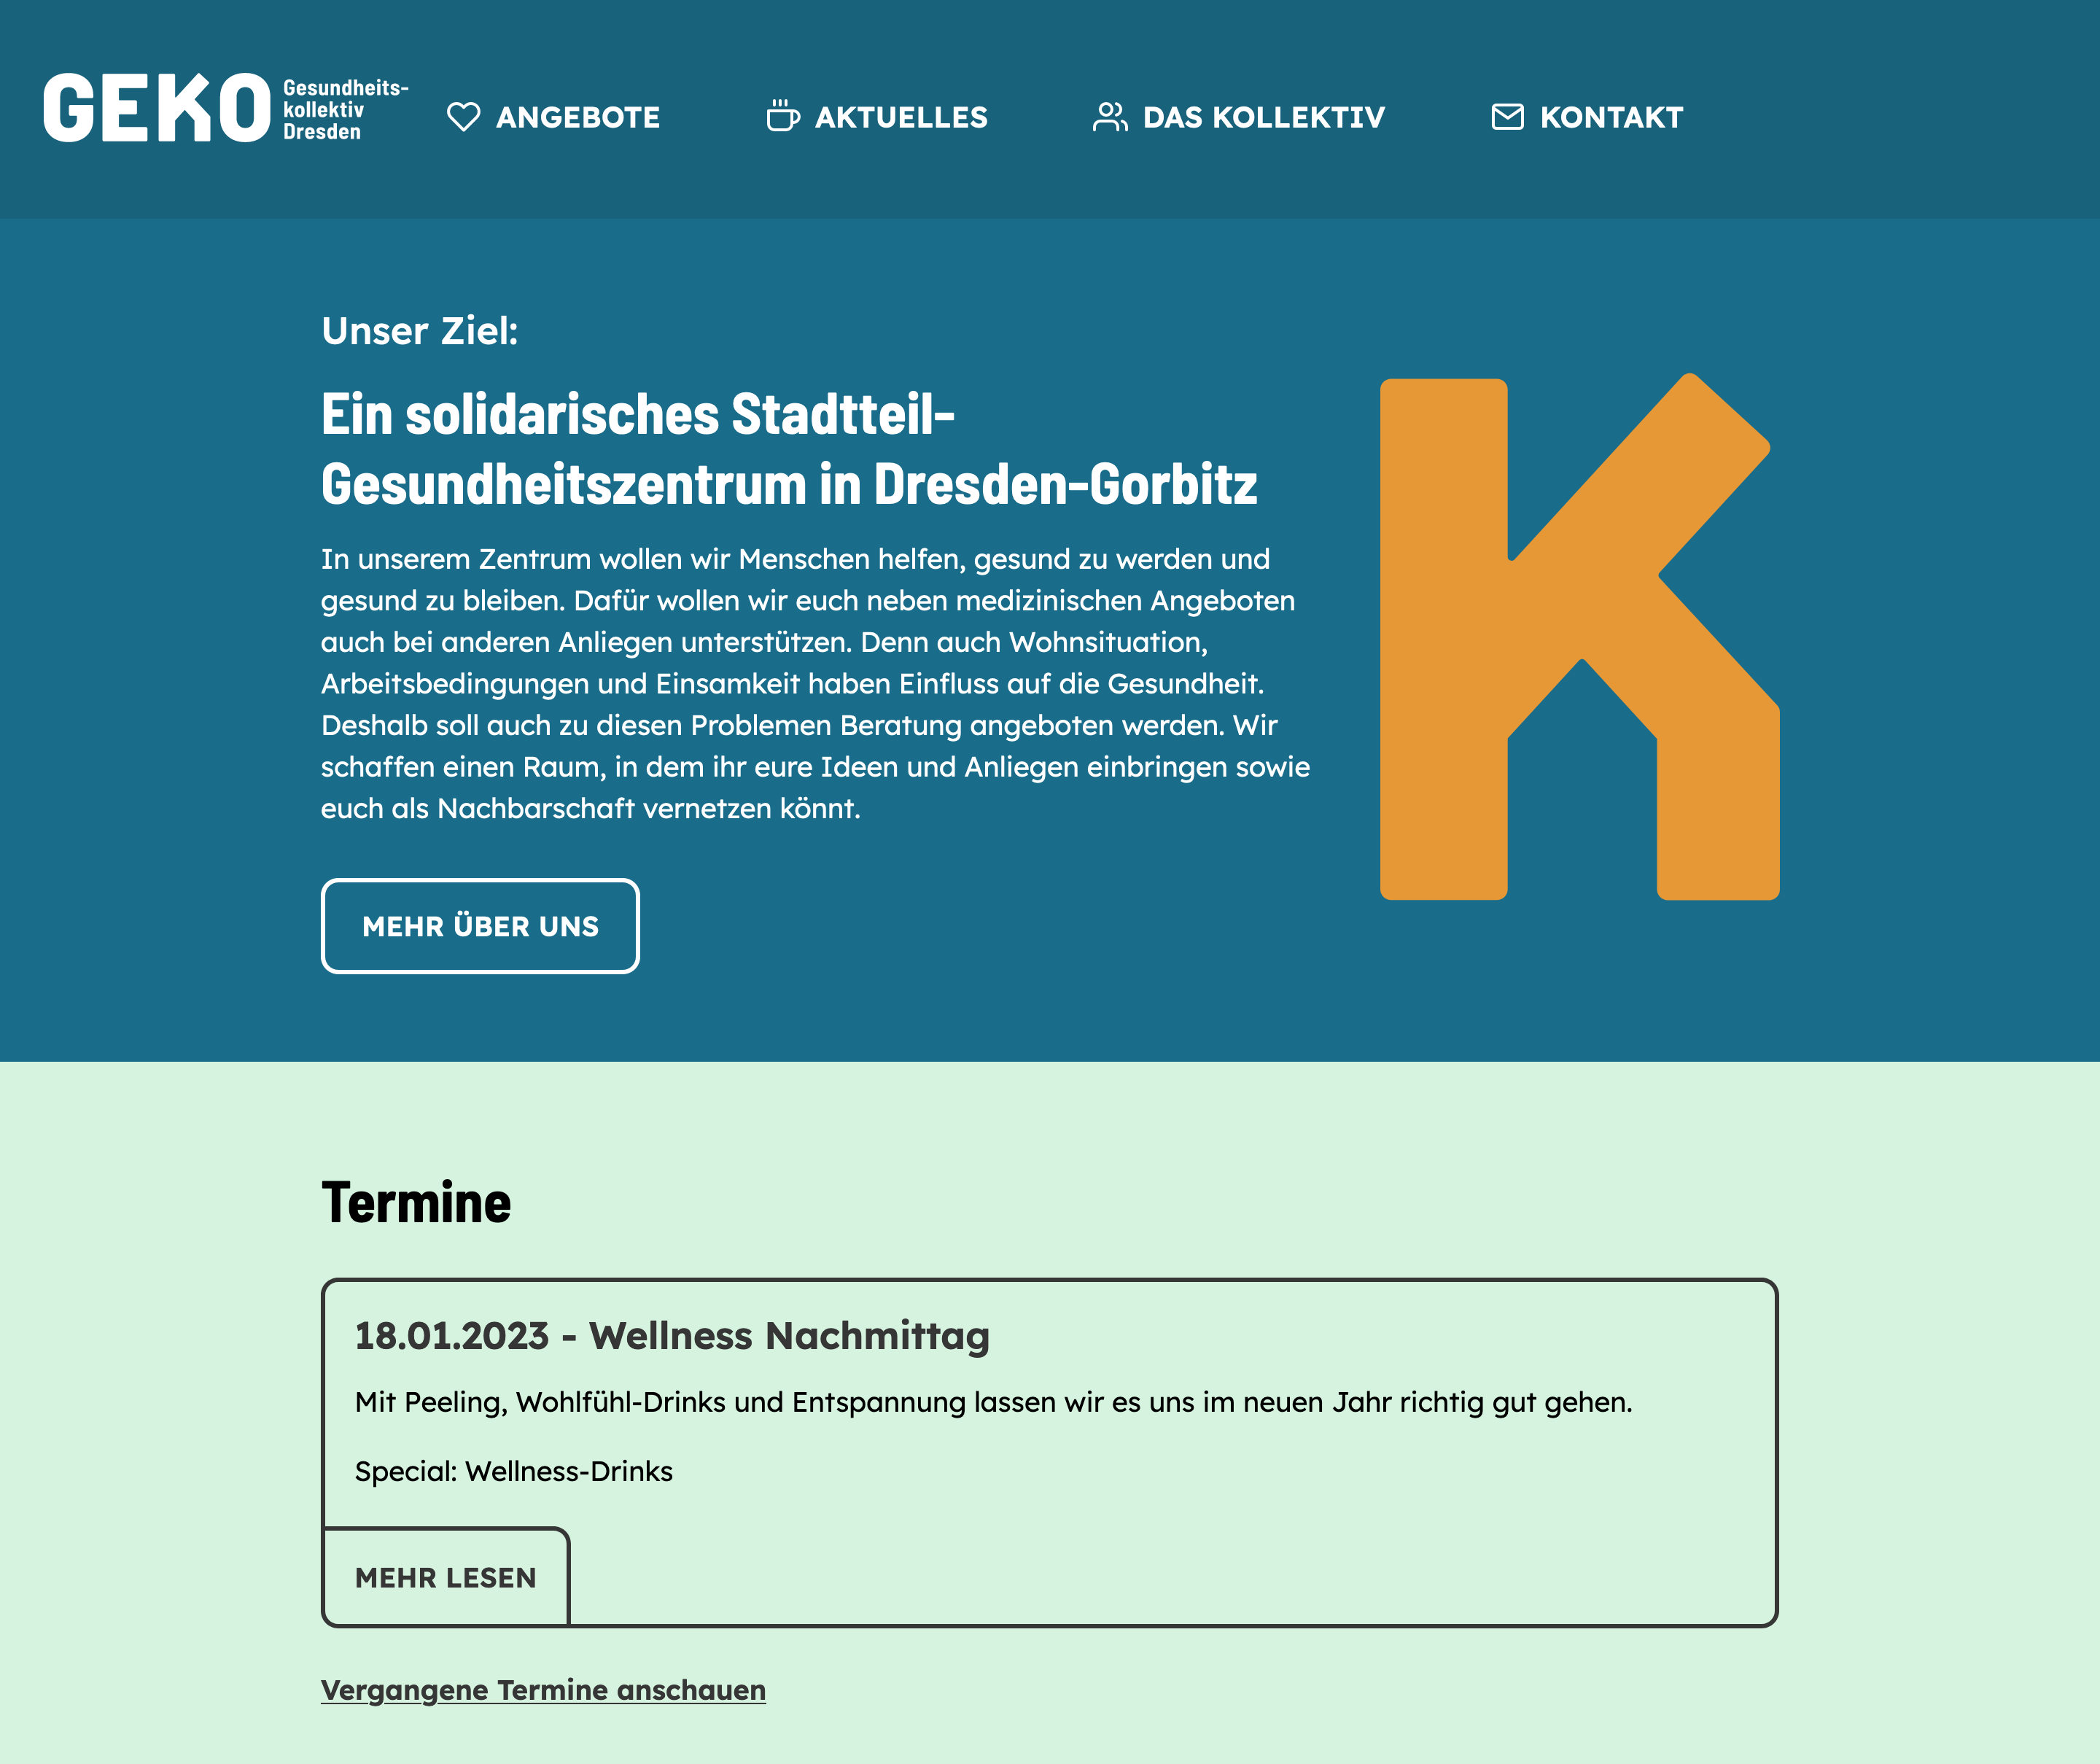 A screenshot of the website from the GEKO Dresden